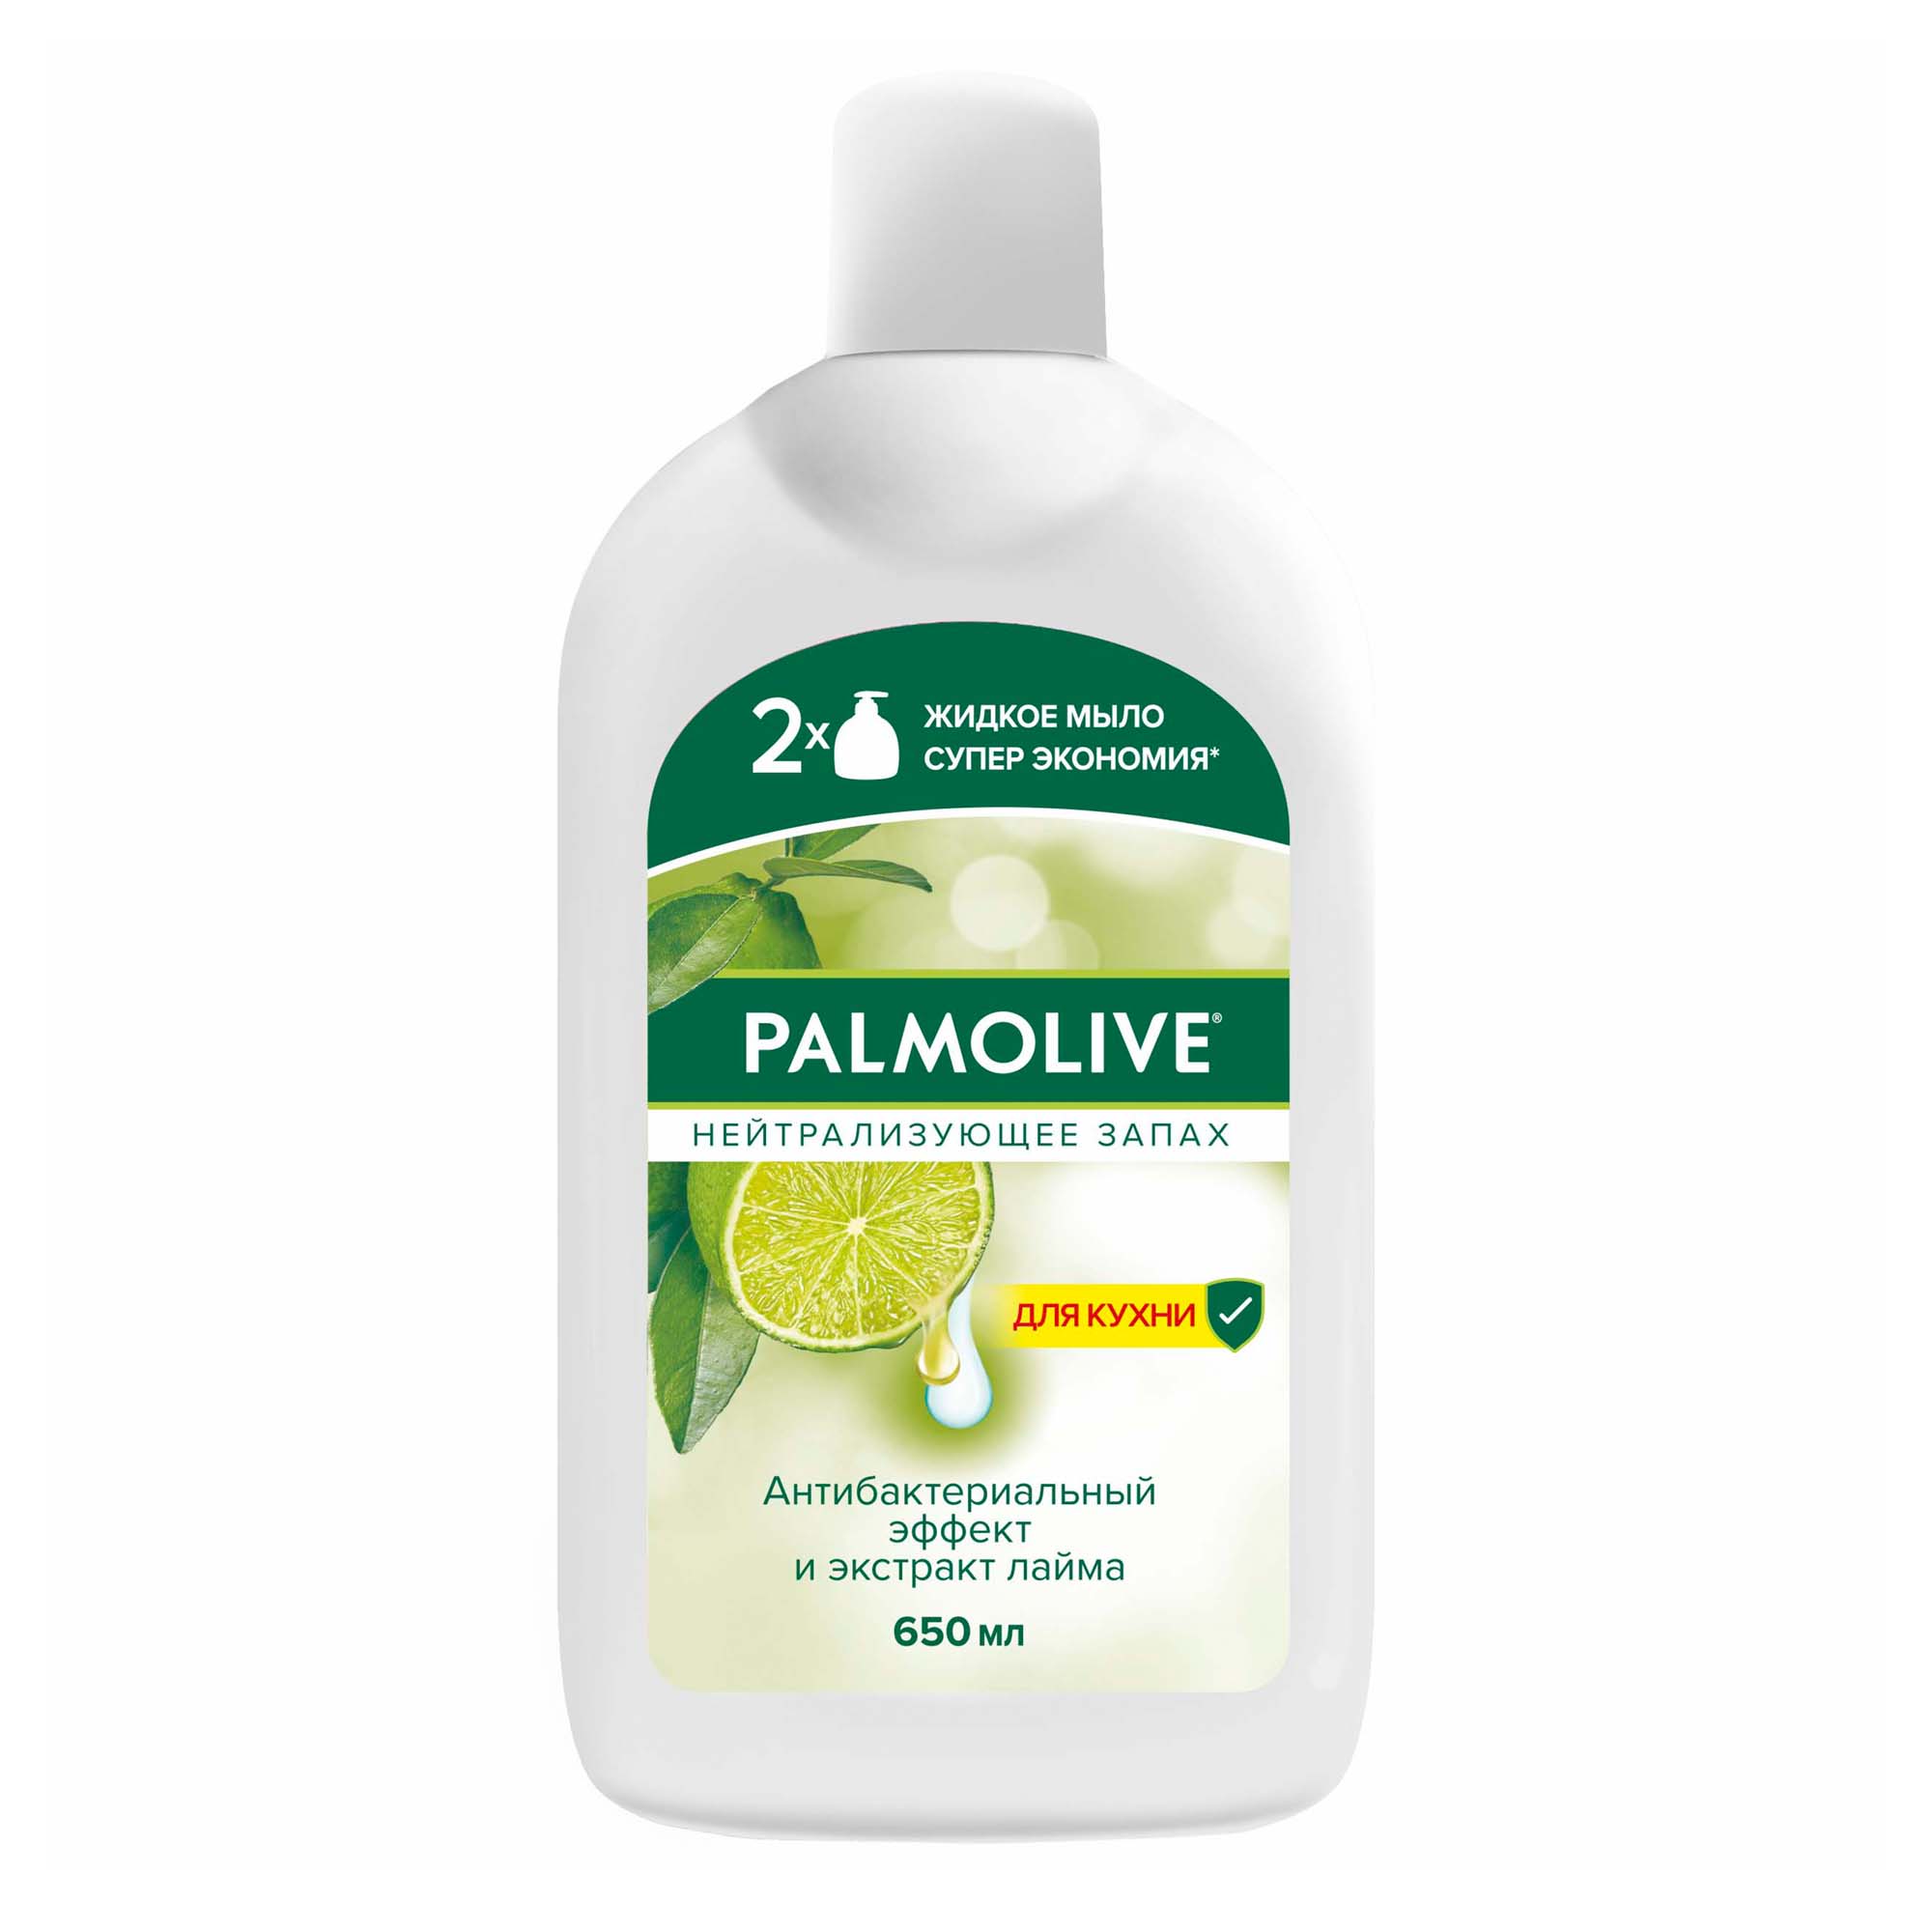 Туалетное мыло жидкое Palmolive Нейтрализующее Запах с антибактериальным эффектом 650 мл